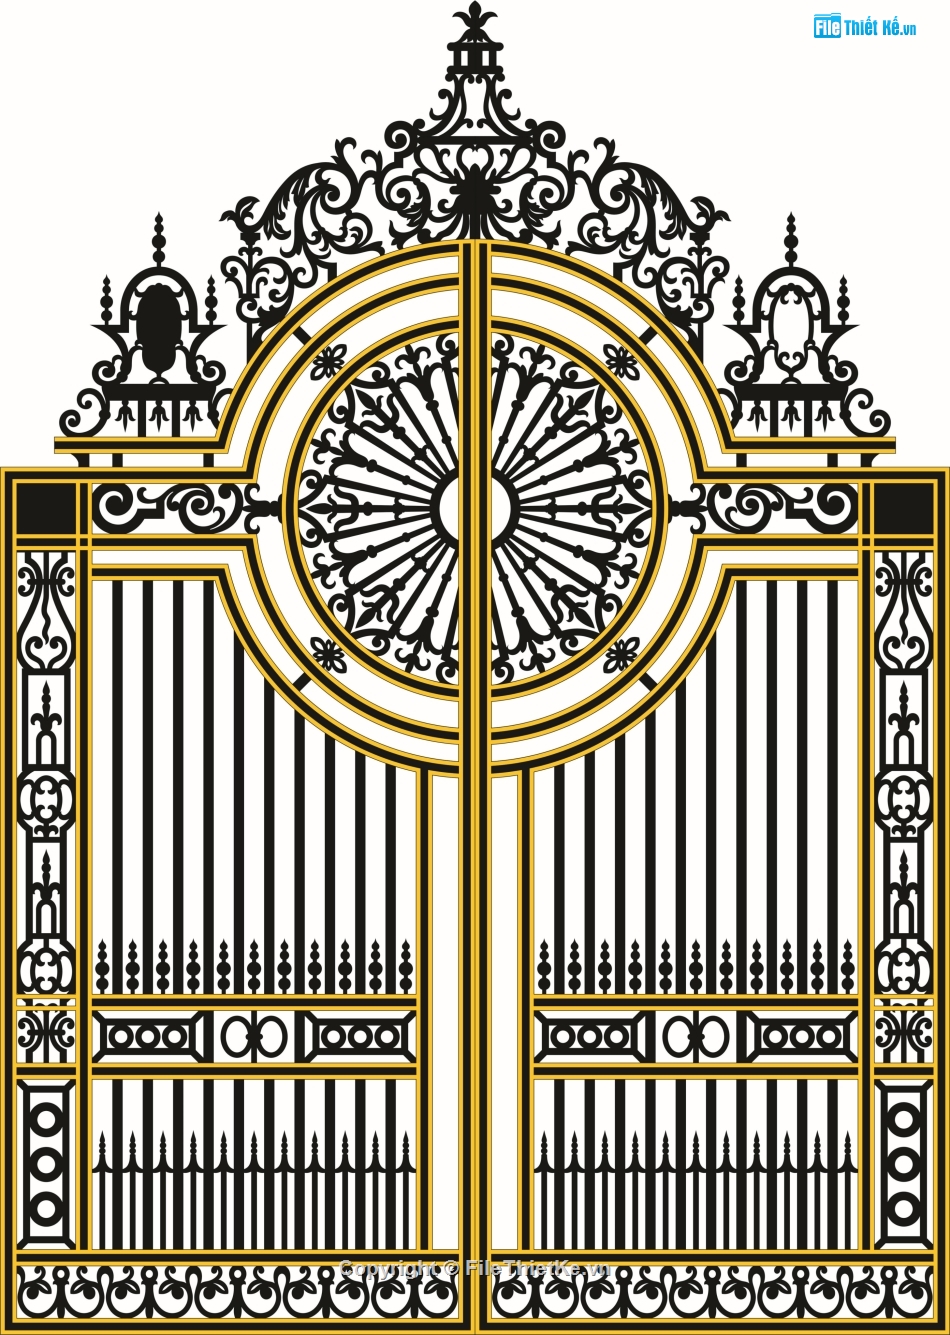 cổng cắt cnc đẹp,mẫu cổng cnc 2 cánh,thiết kế cổng 2 cánh,bộ cửa cổng 2 cánh cnc